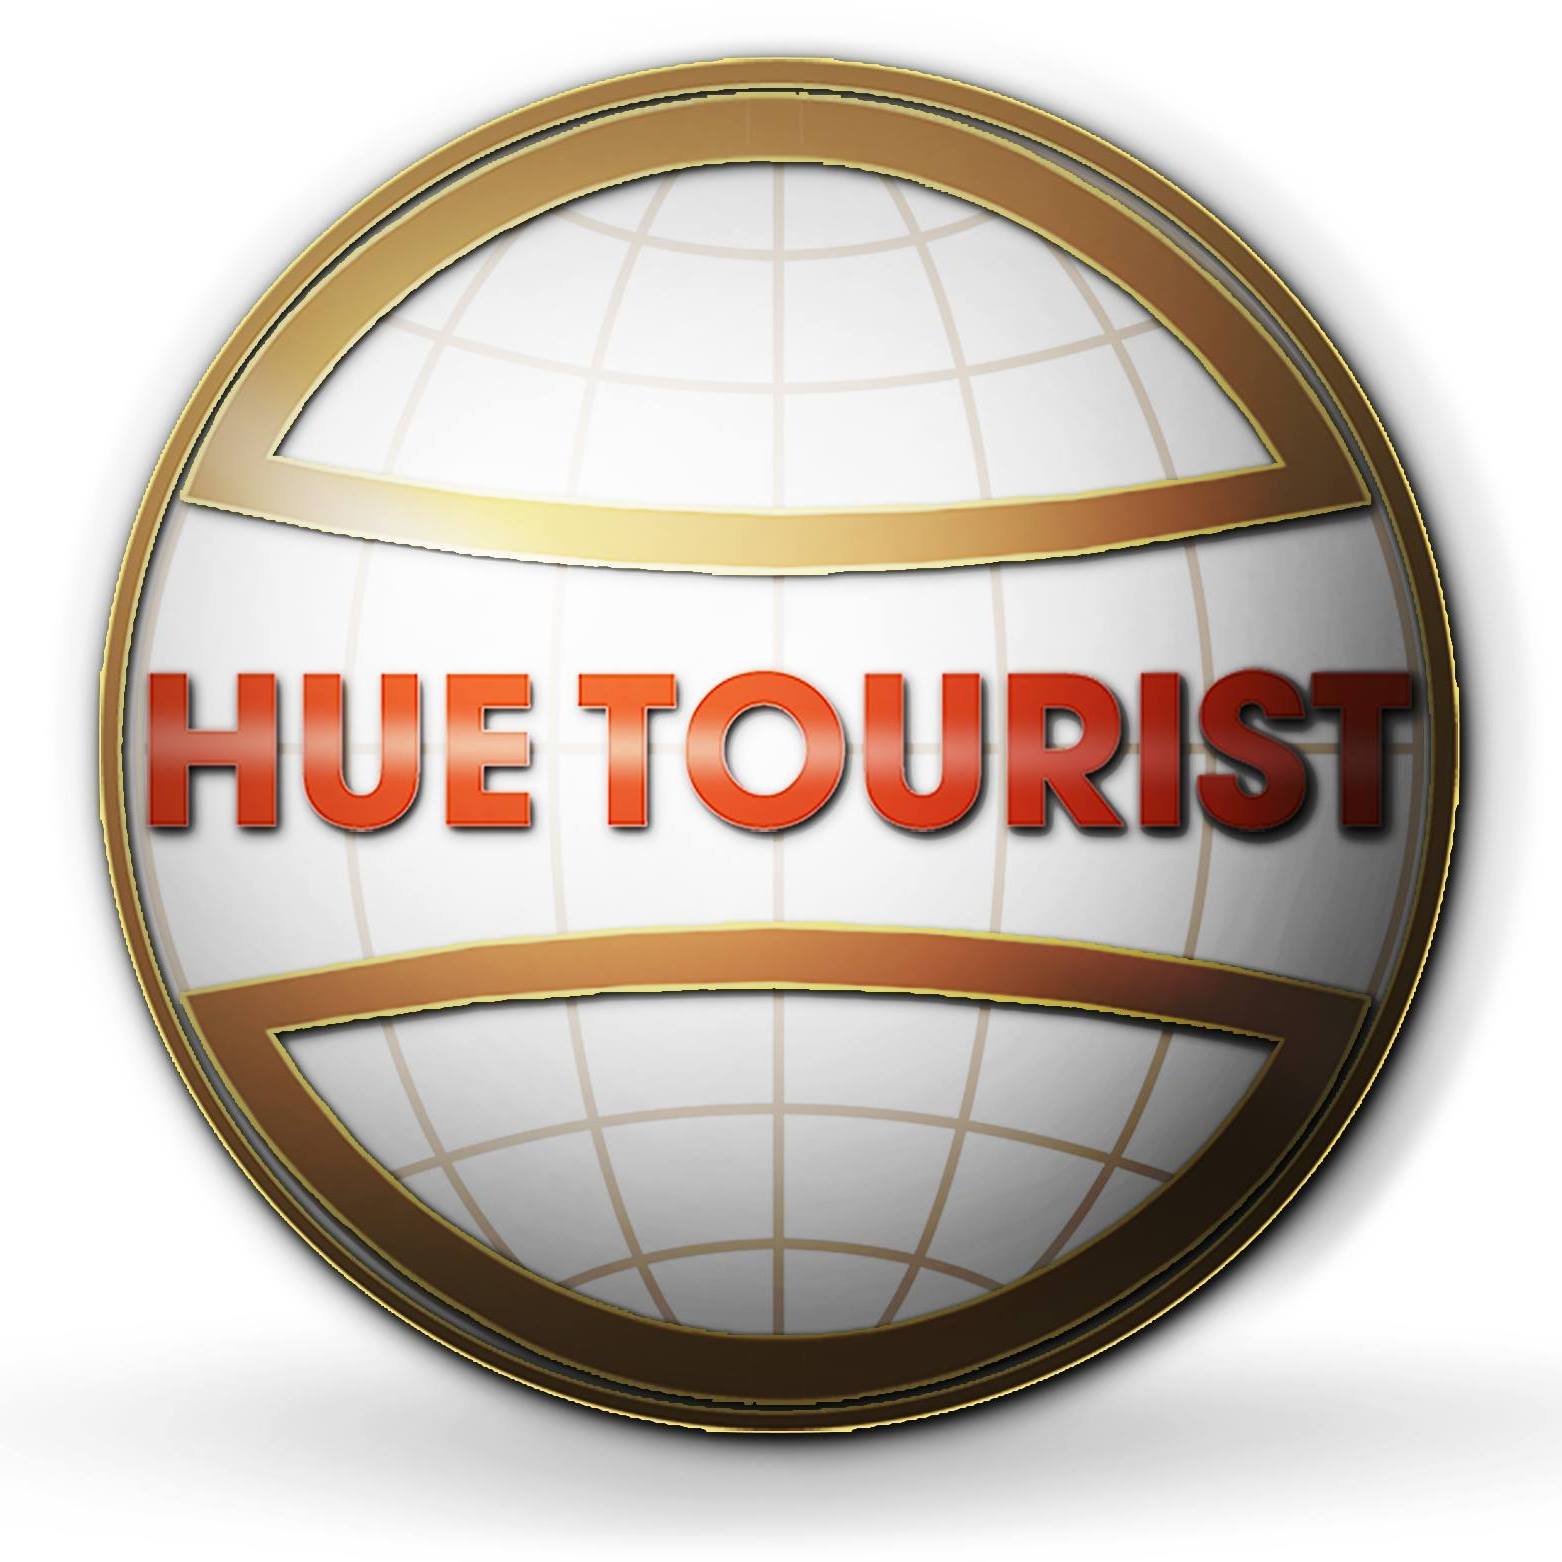 Image result for Hue tourist Viet Nam